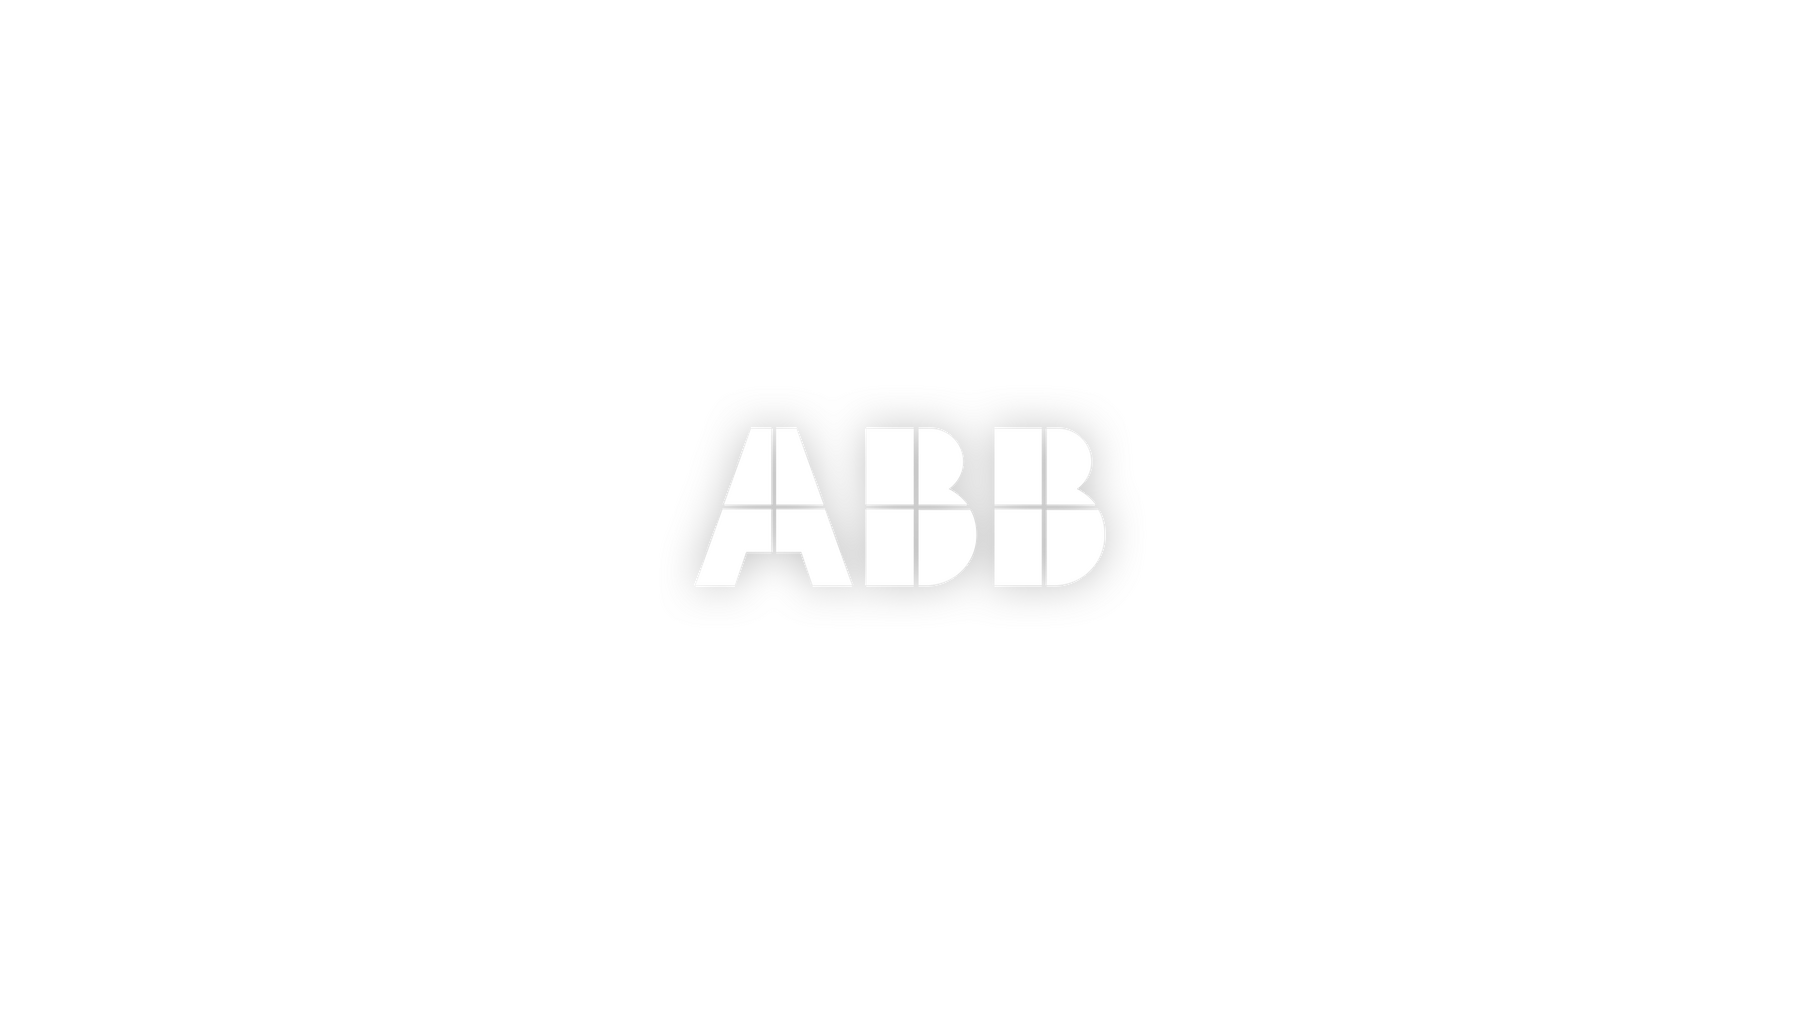 Abb logo center